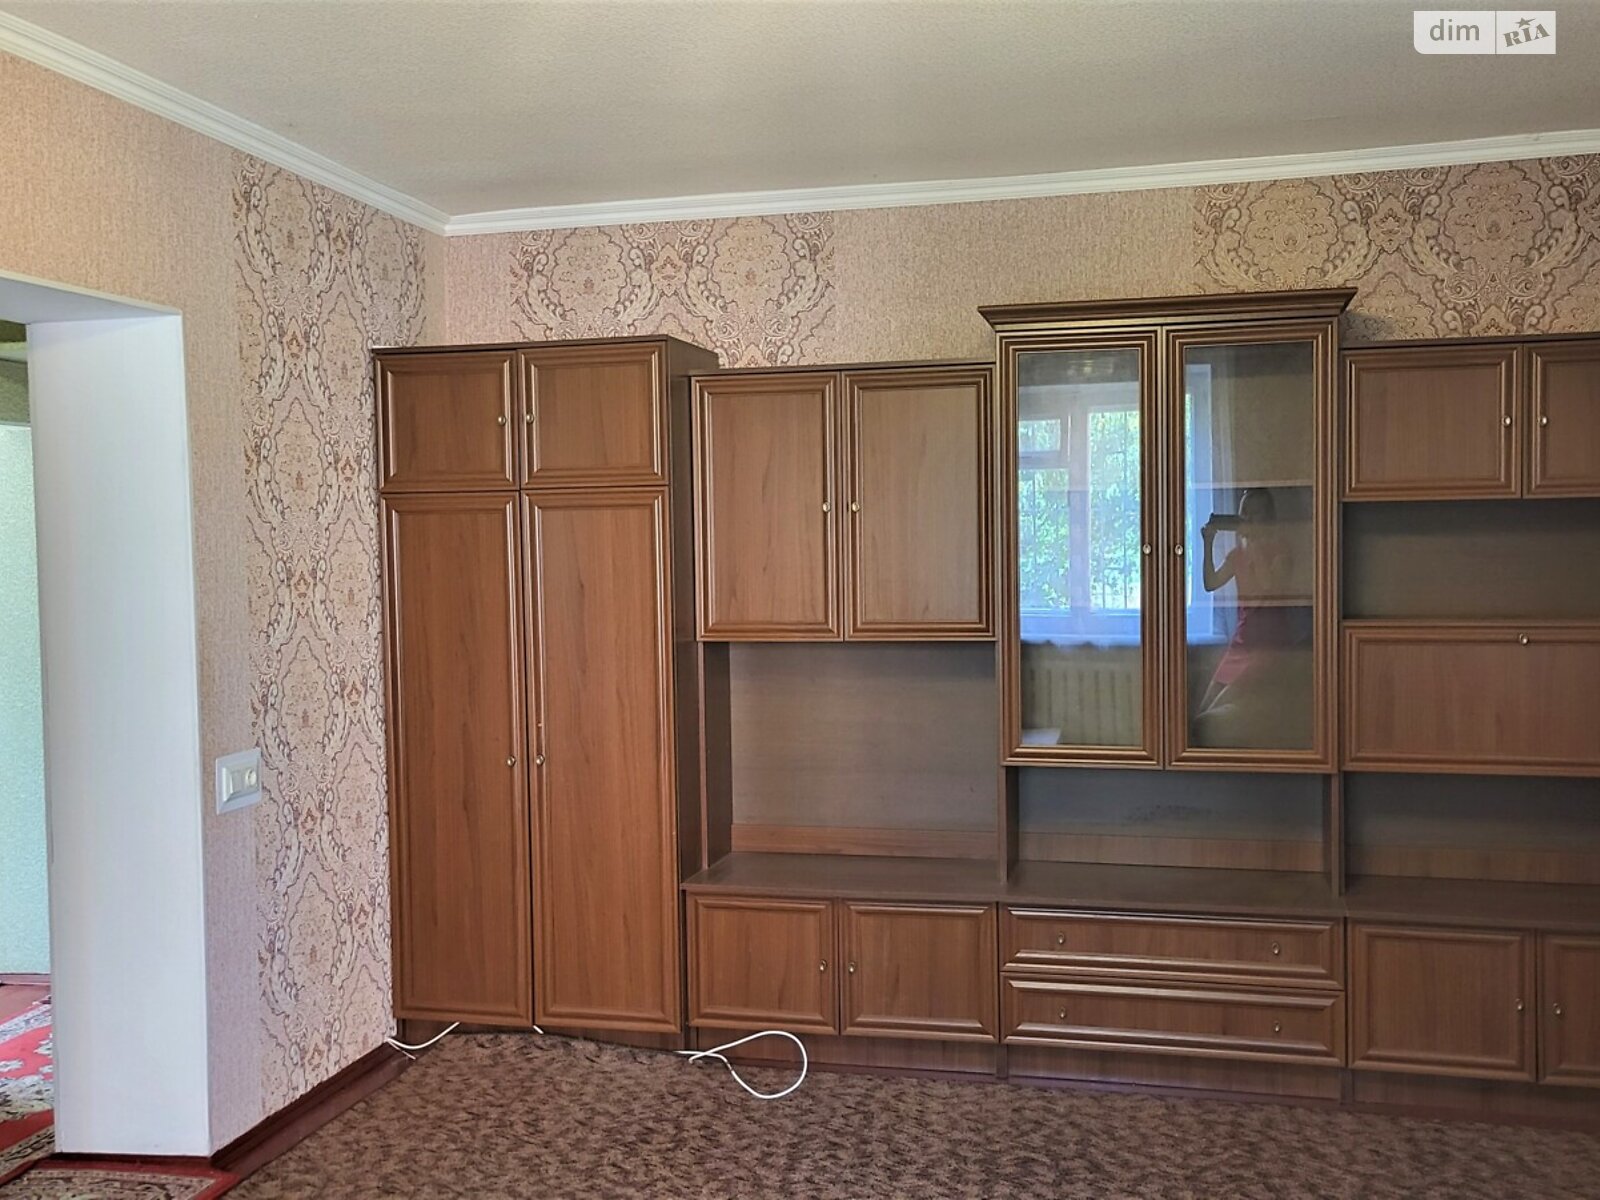 Продажа двухкомнатной квартиры в Чернигове, на ул. Нефтяников 11, район Забаровка фото 1